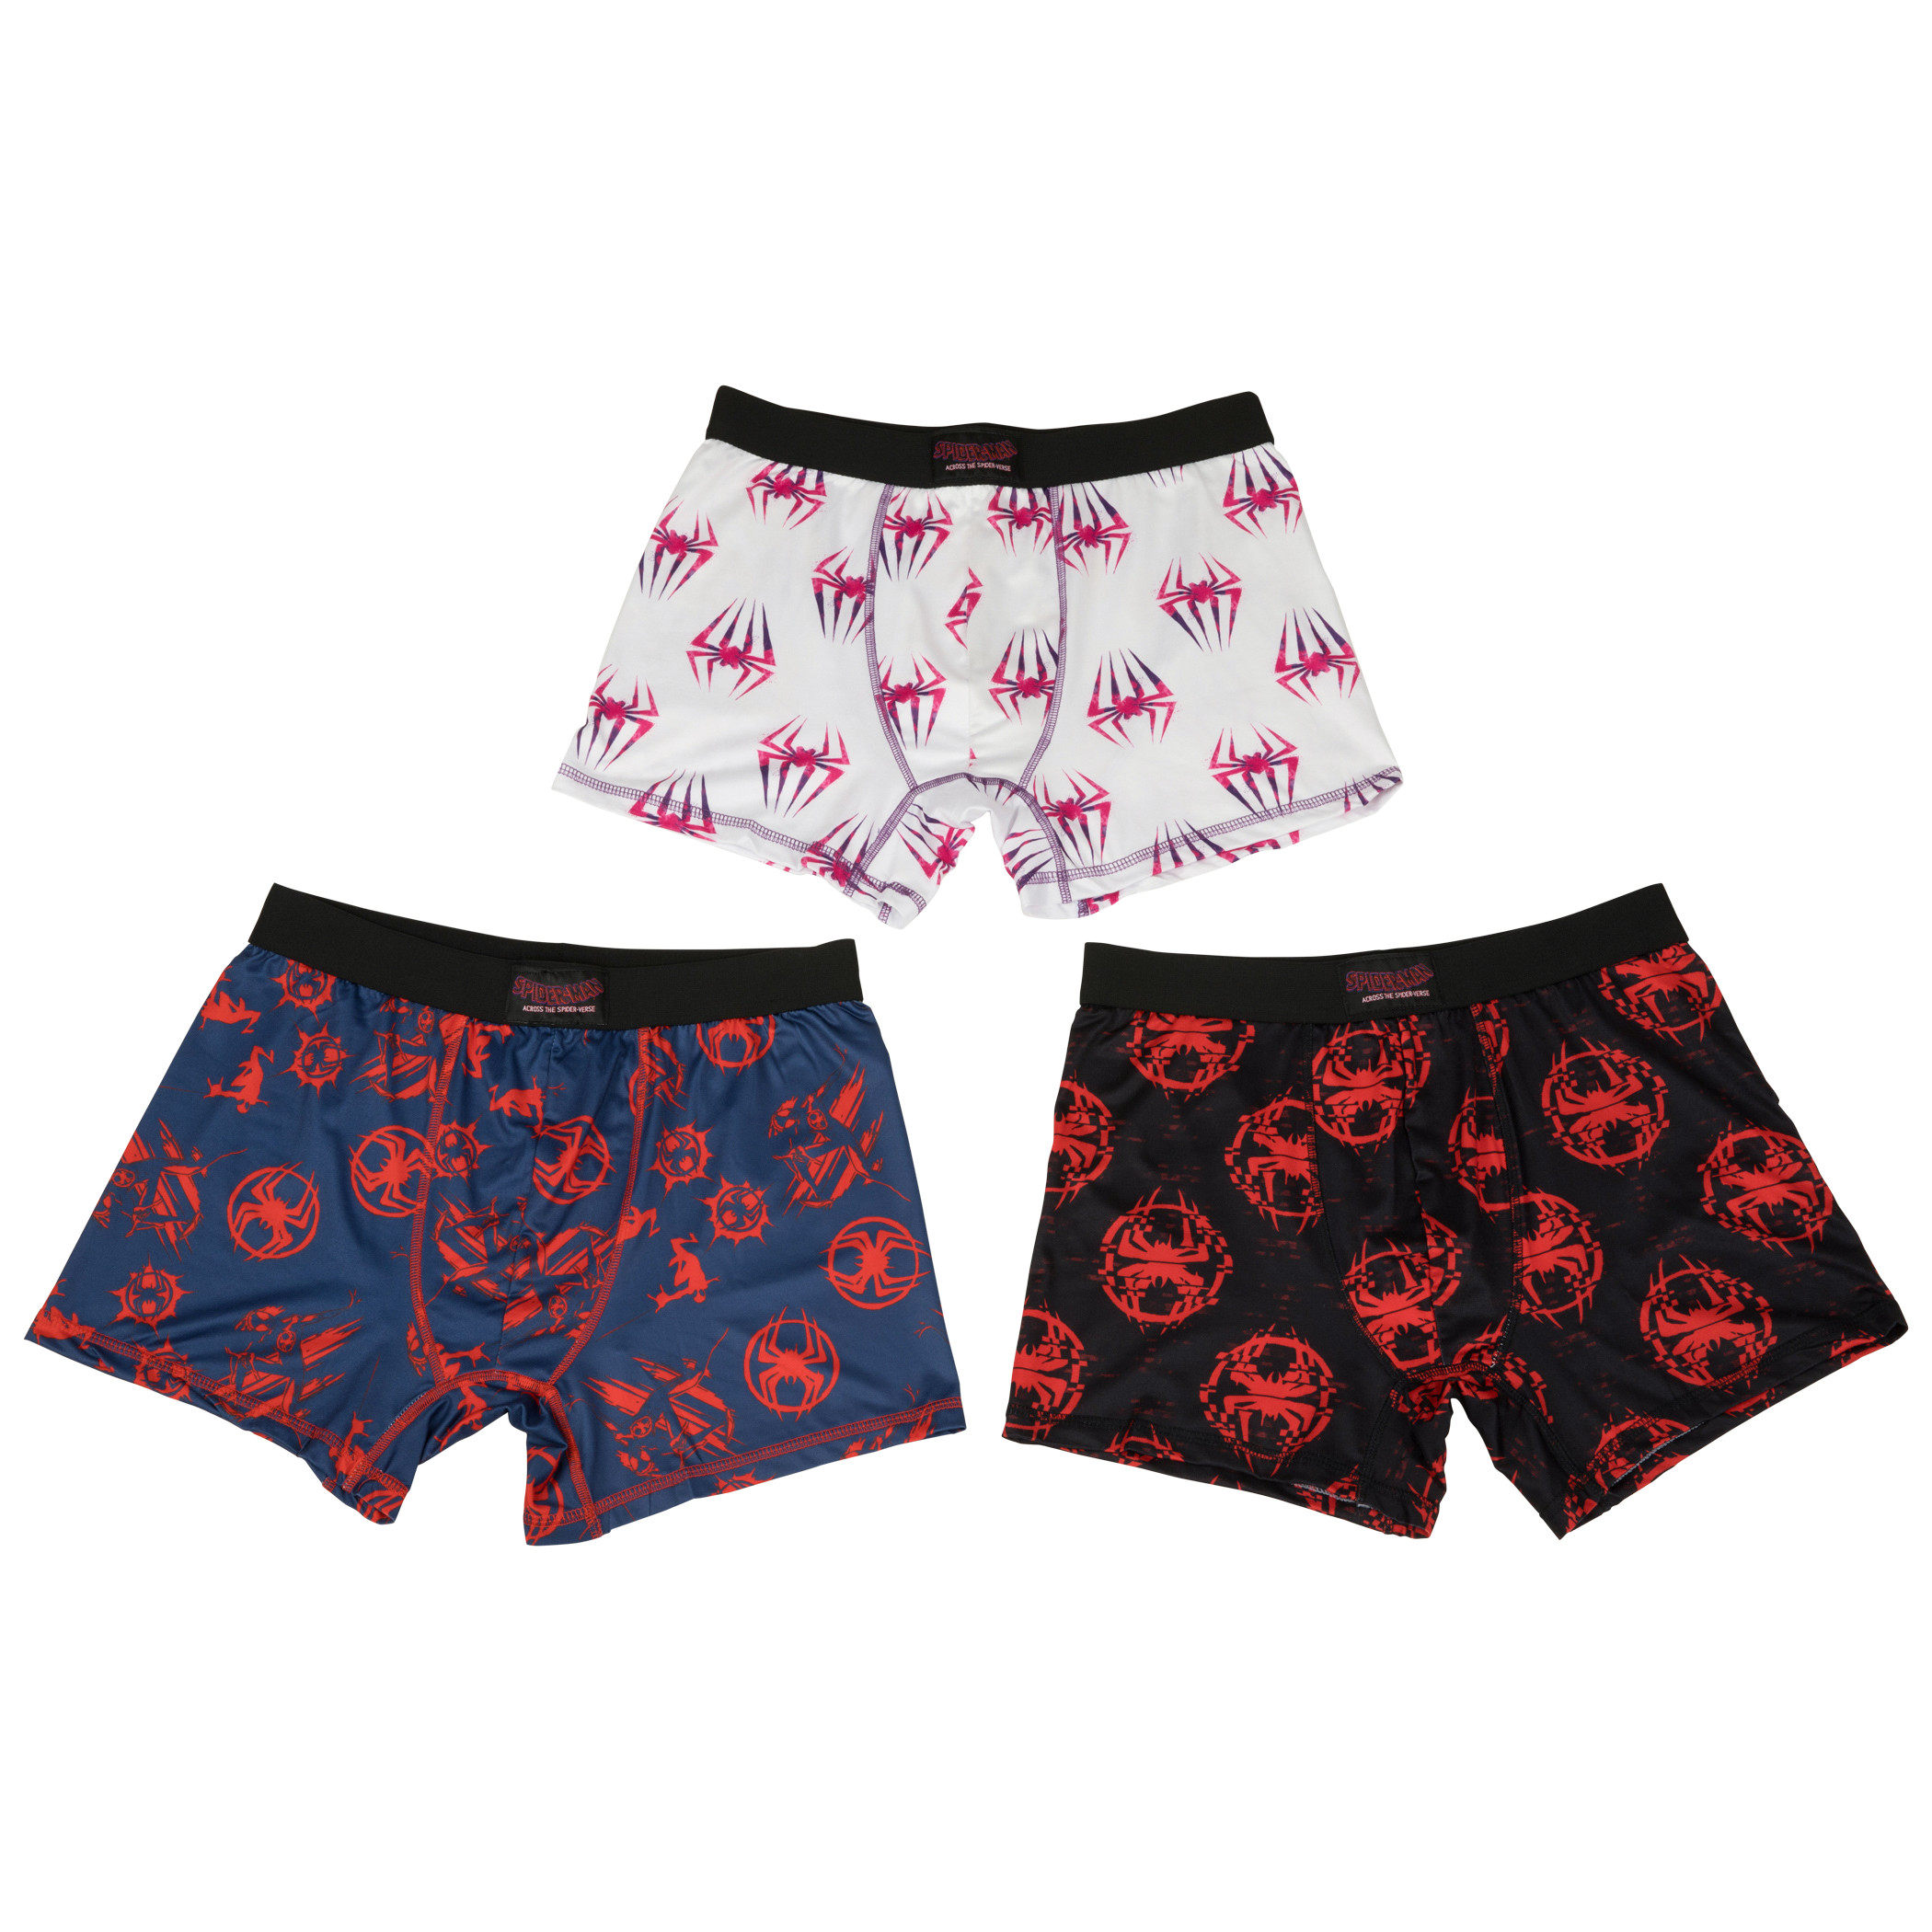 Boy's Underwear Spiderman Size Small 6 Medium 8 Large 10 NEW Red Boxer  Briefs